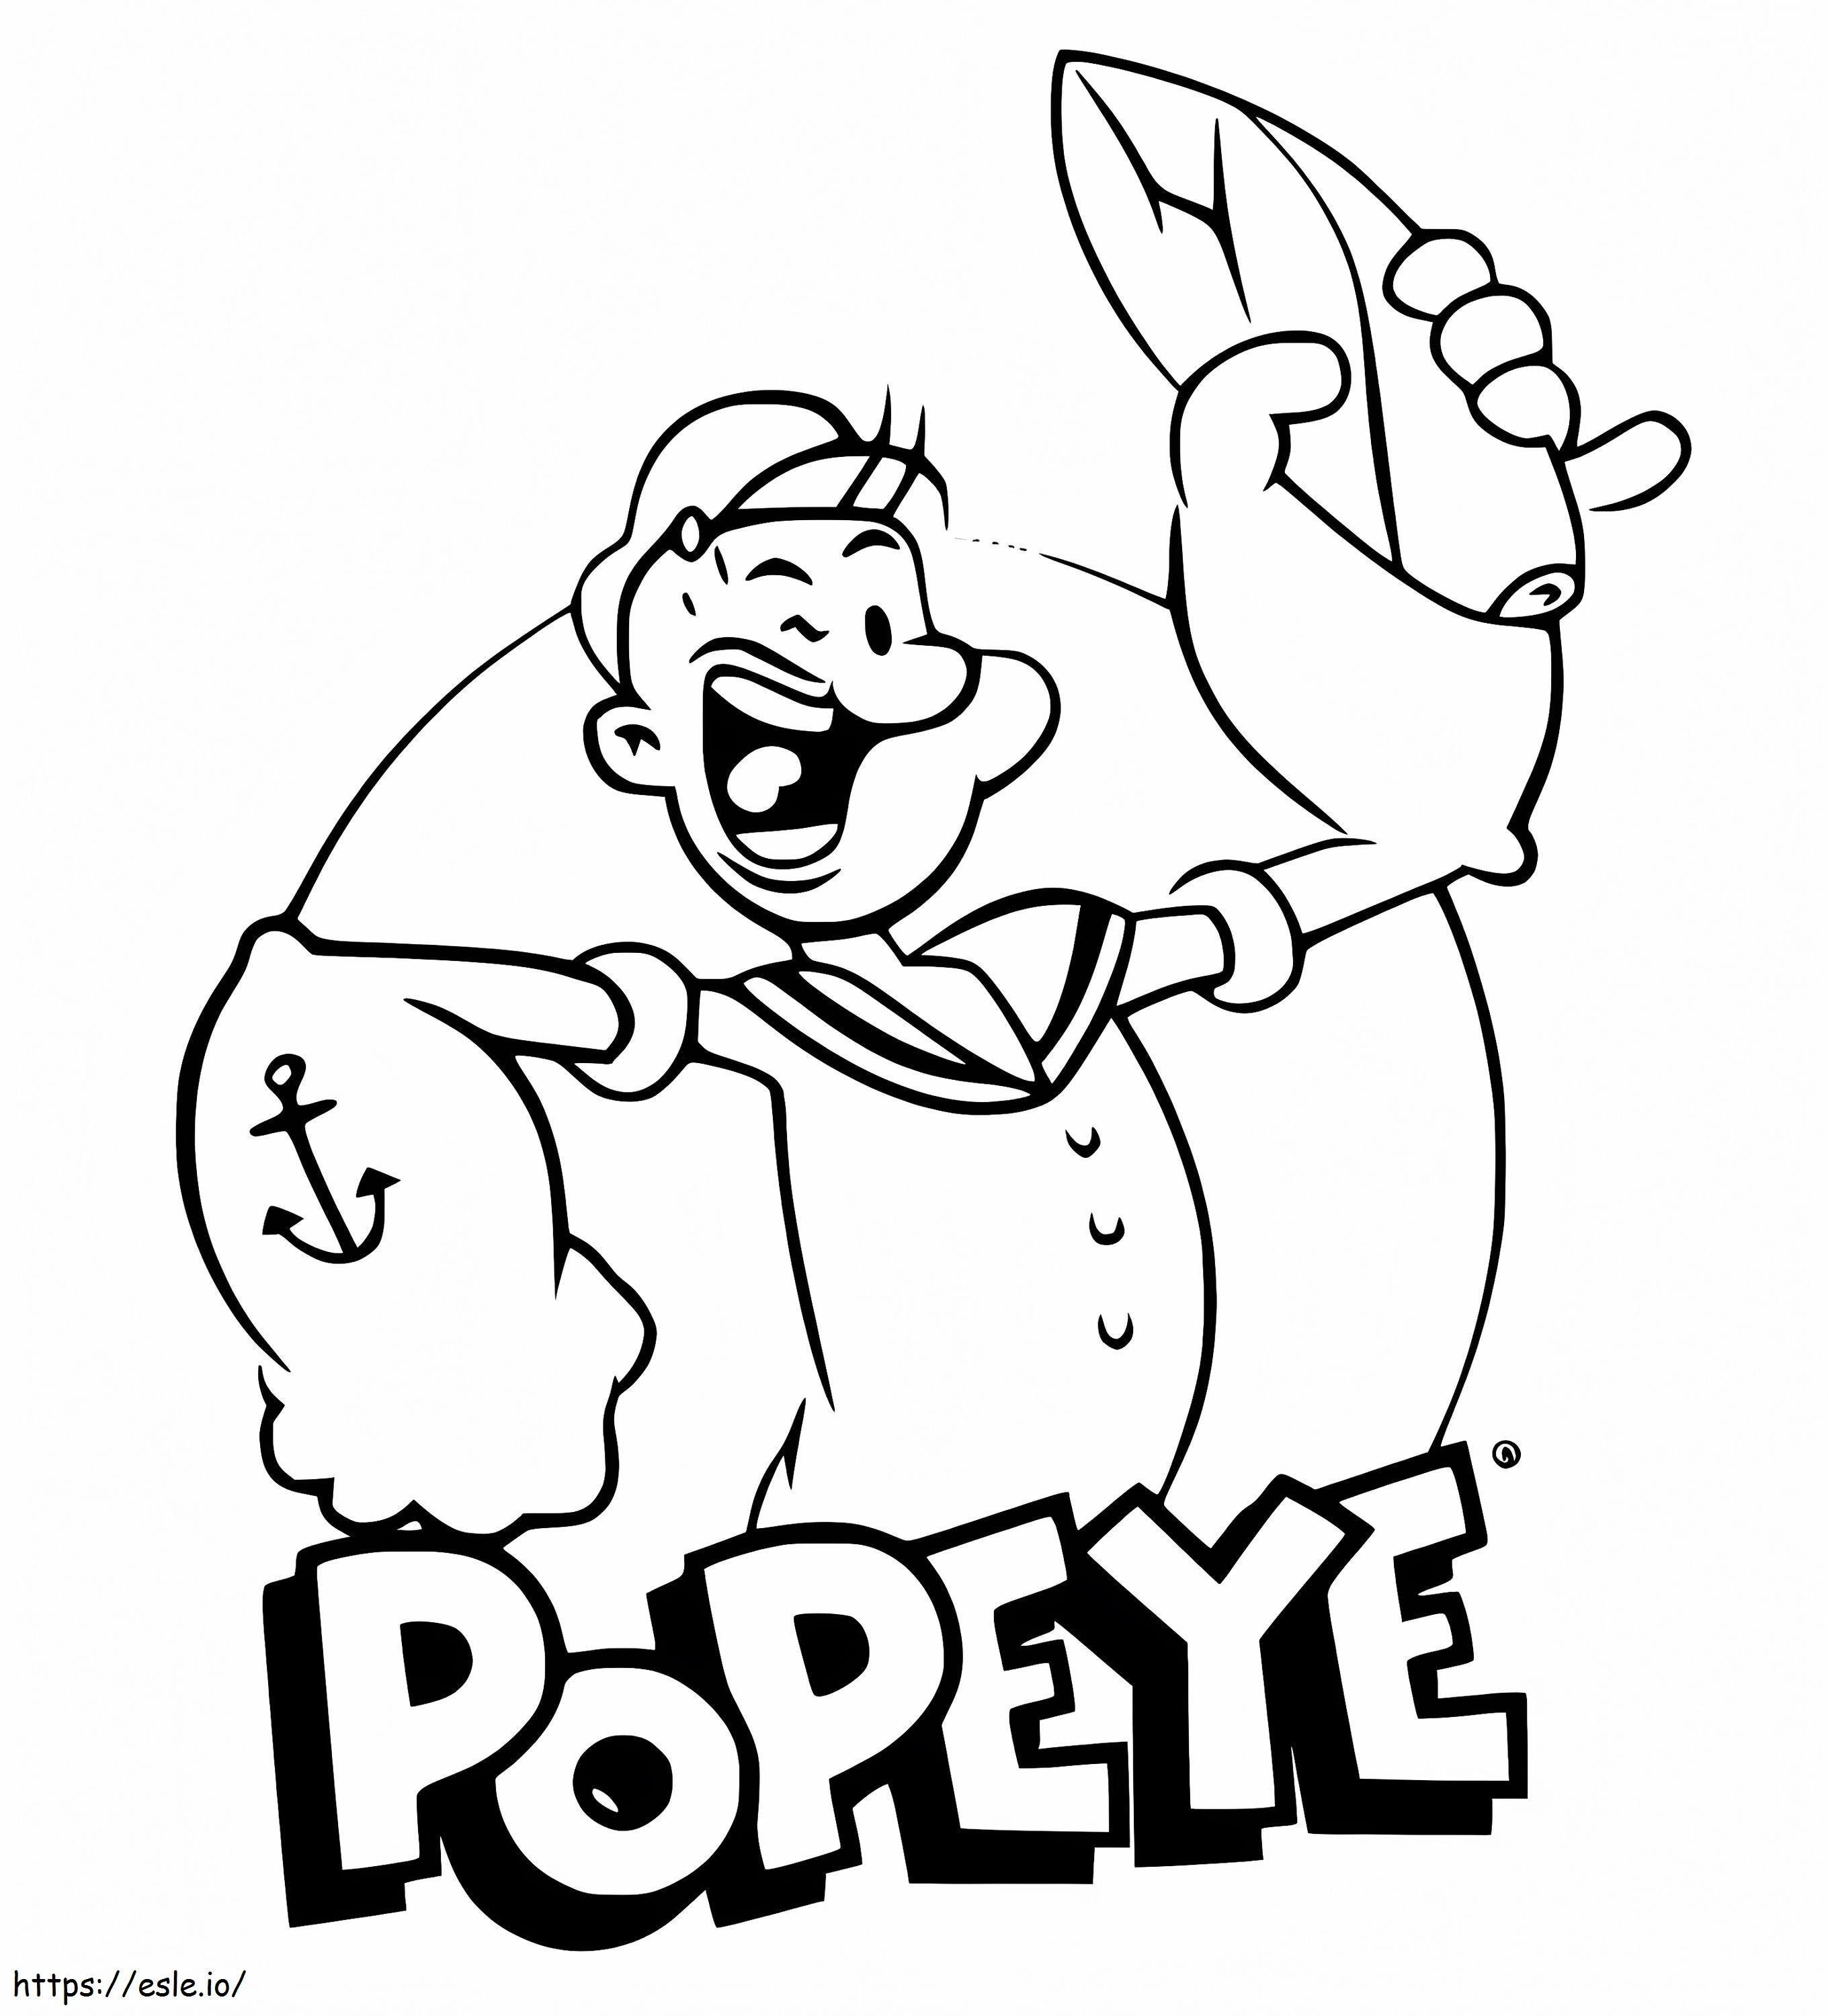 Popeye lacht kleurplaat kleurplaat